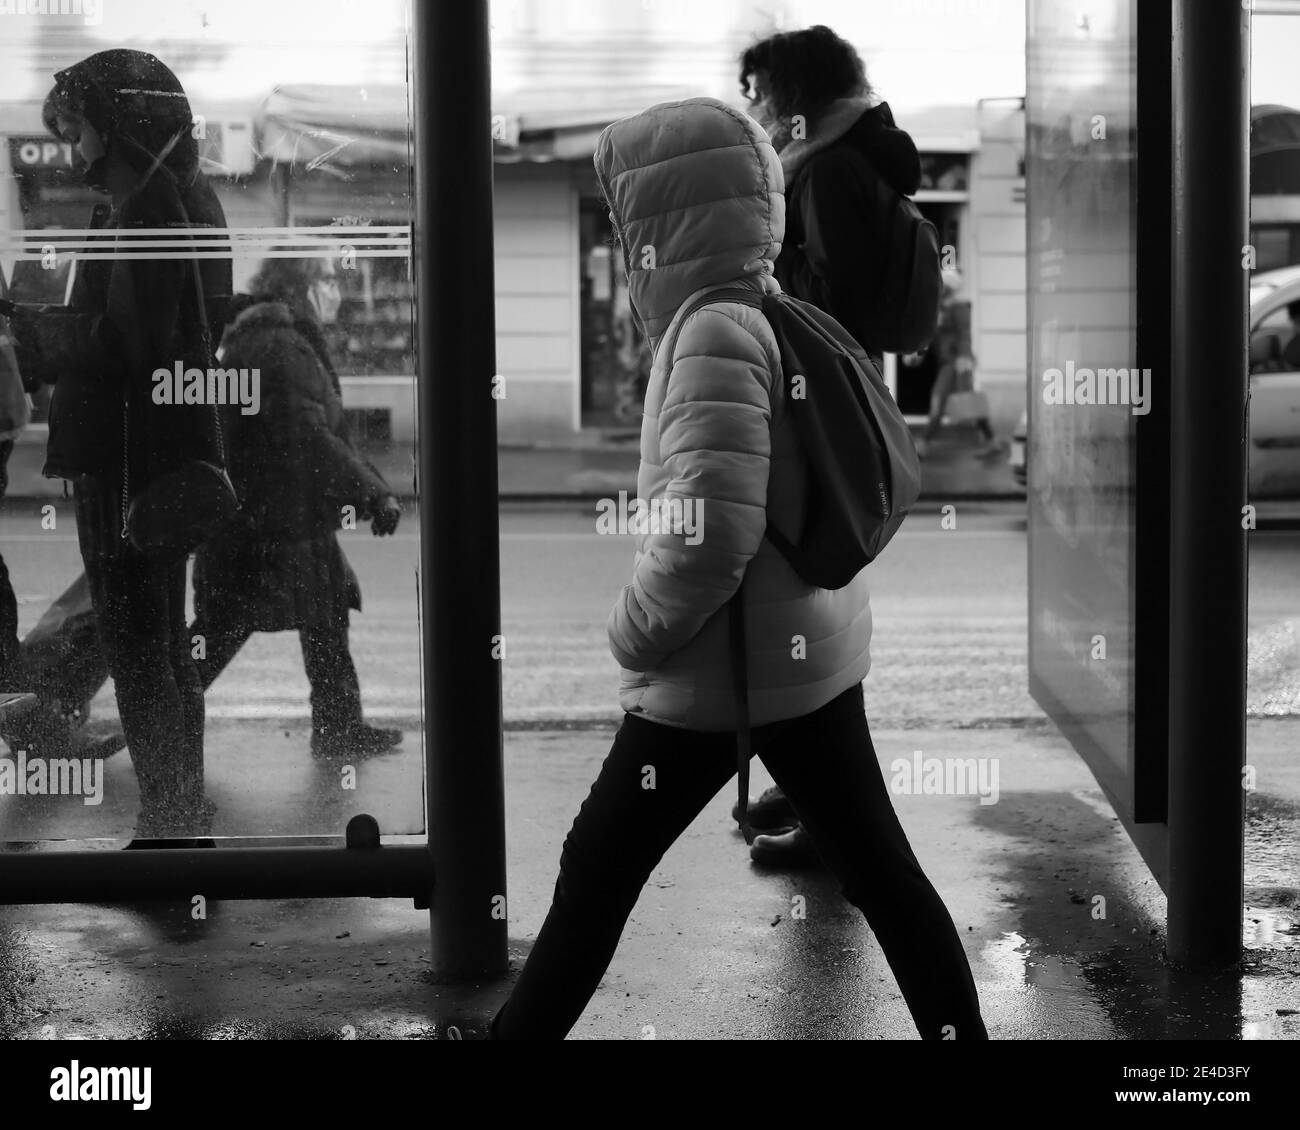 Scène urbaine avec une fille à capuchon passant devant l'arrêt de bus (N/B) Banque D'Images